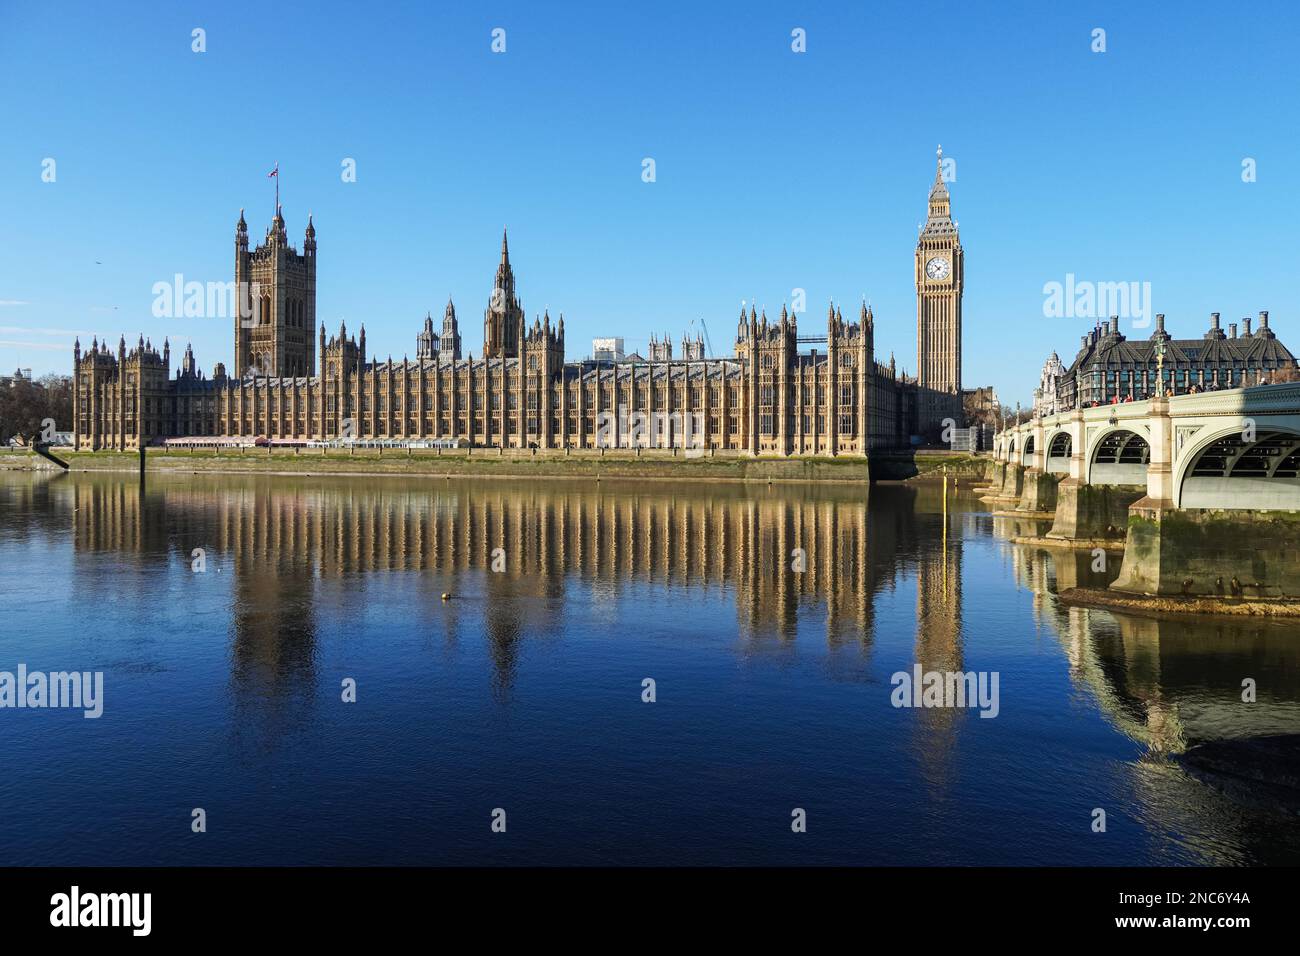 La Tamise avec le pont de Westminster, la tour de l'horloge de Big Ben et le palais de Westminster, Londres Angleterre Royaume-Uni Banque D'Images